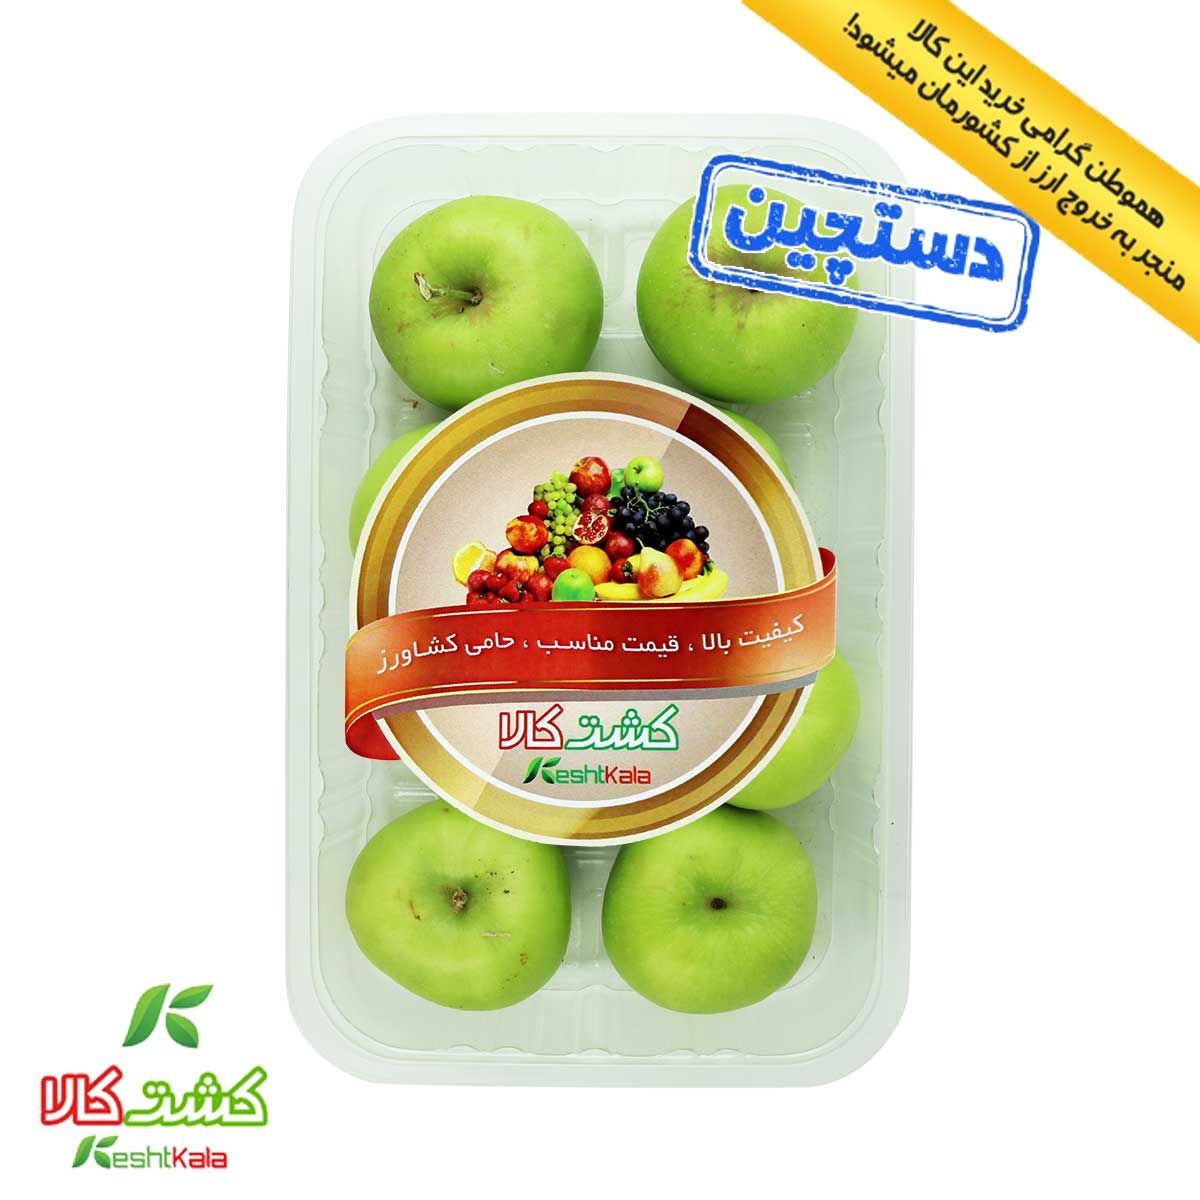 سیب سبز دستچین کشت کالا 1 کیلوگرمی